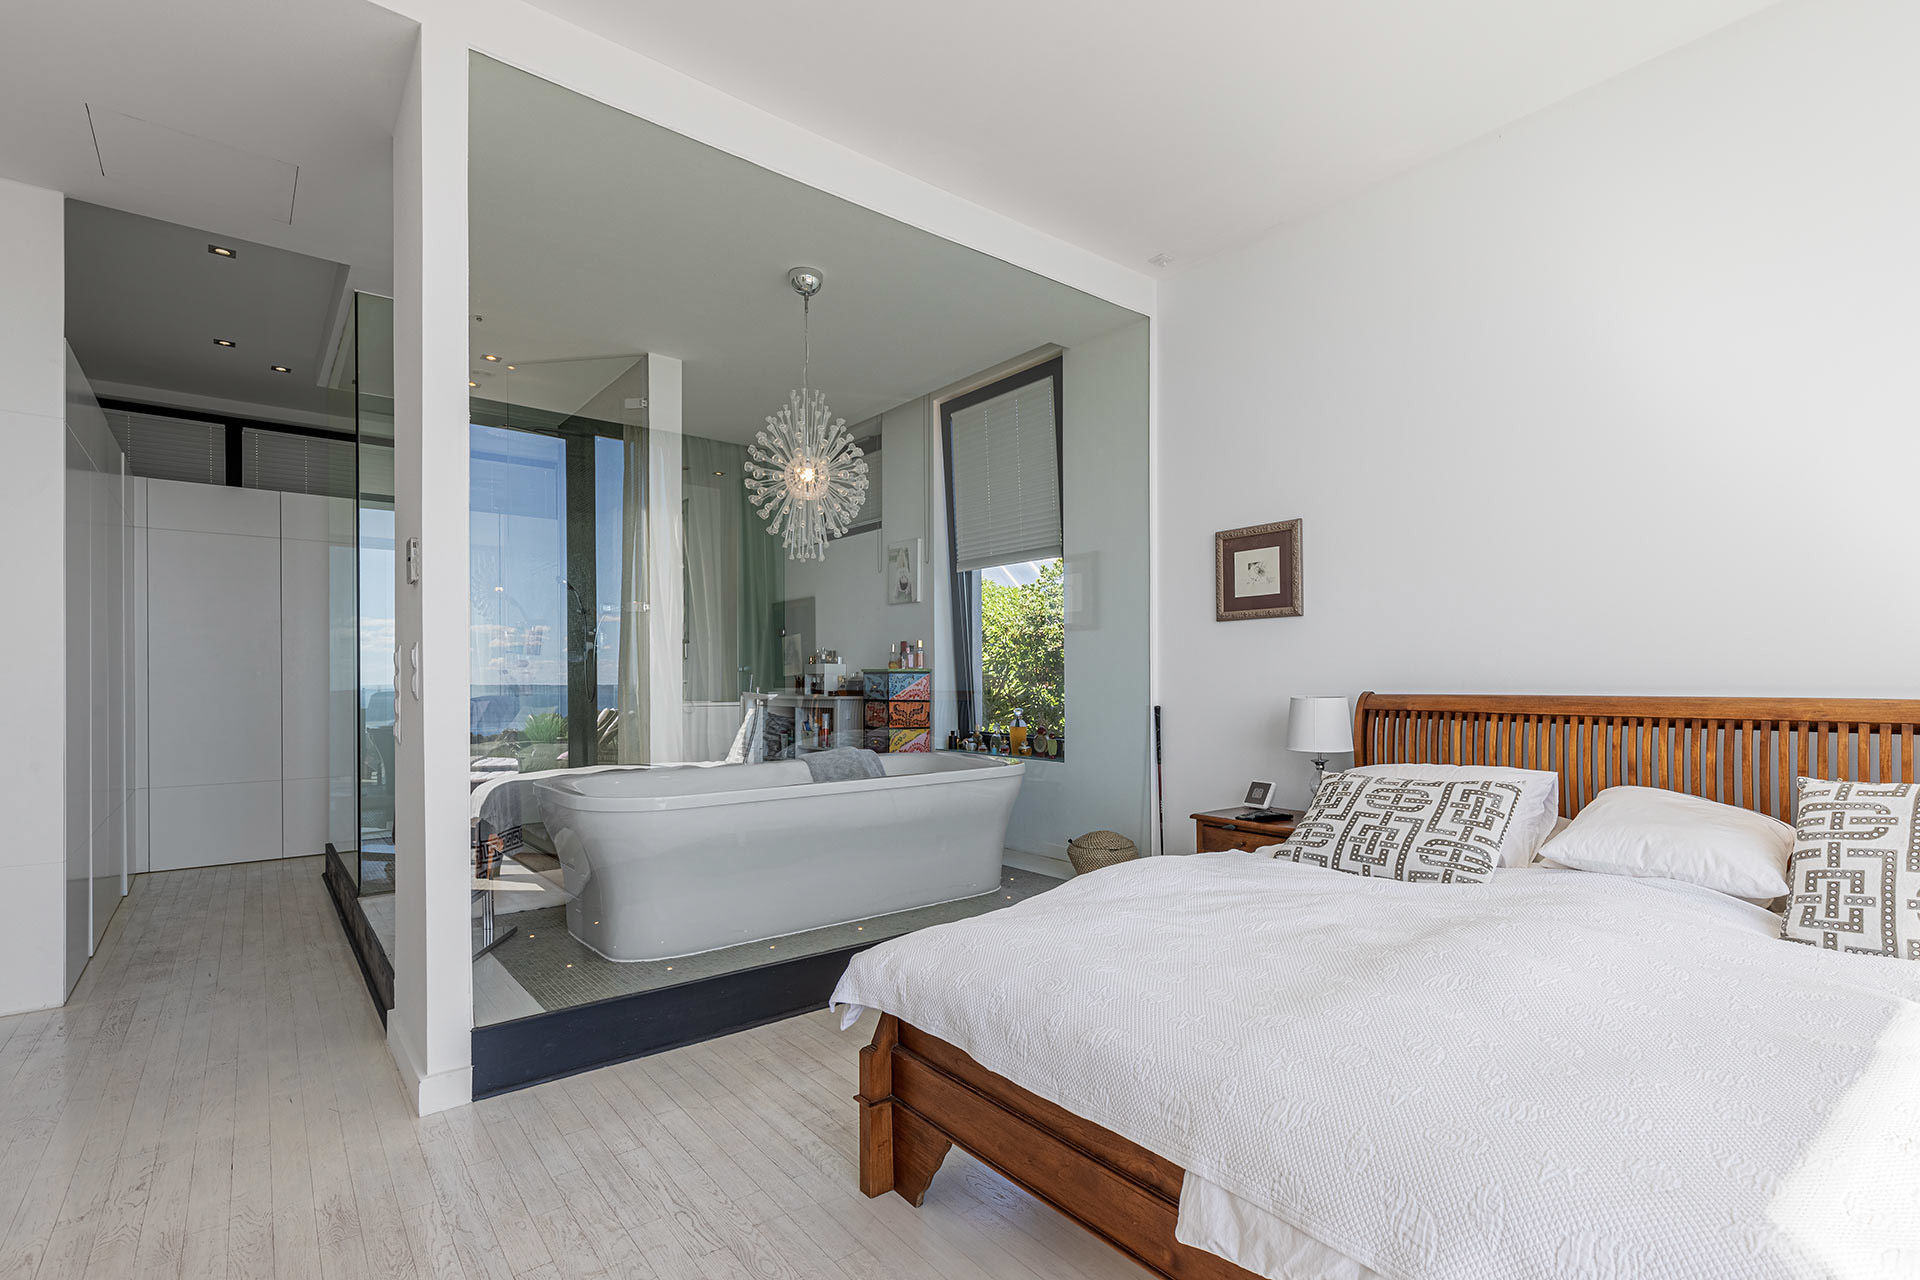 Villa moderna con vistas al mar en Costa d'en Blanes - Dormitorio principal con baño en suite